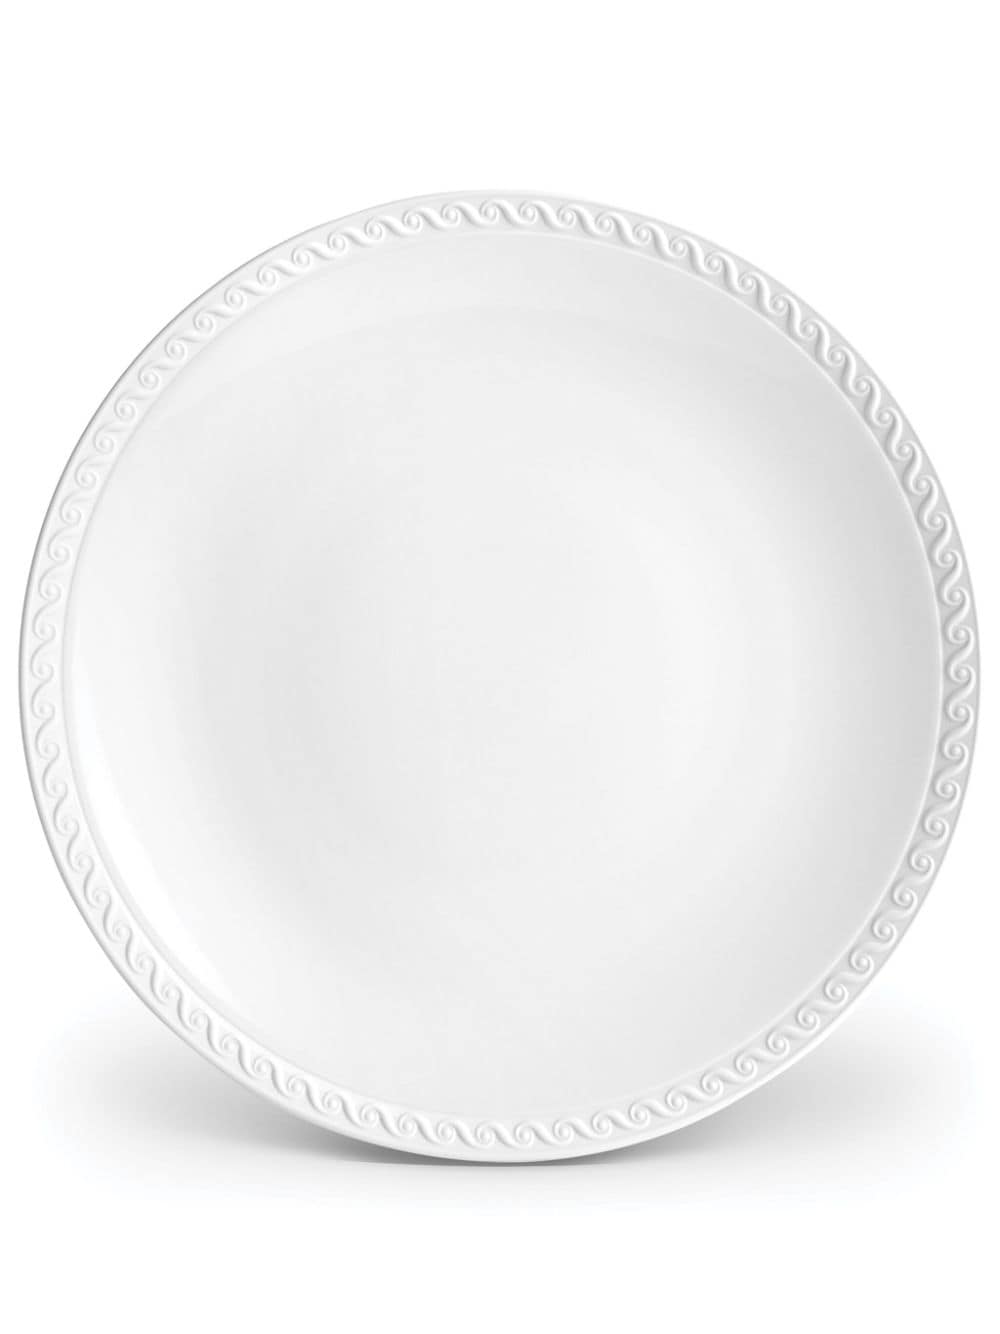 L'Objet Neptune porcelain dinner plate (27cm) - White von L'Objet